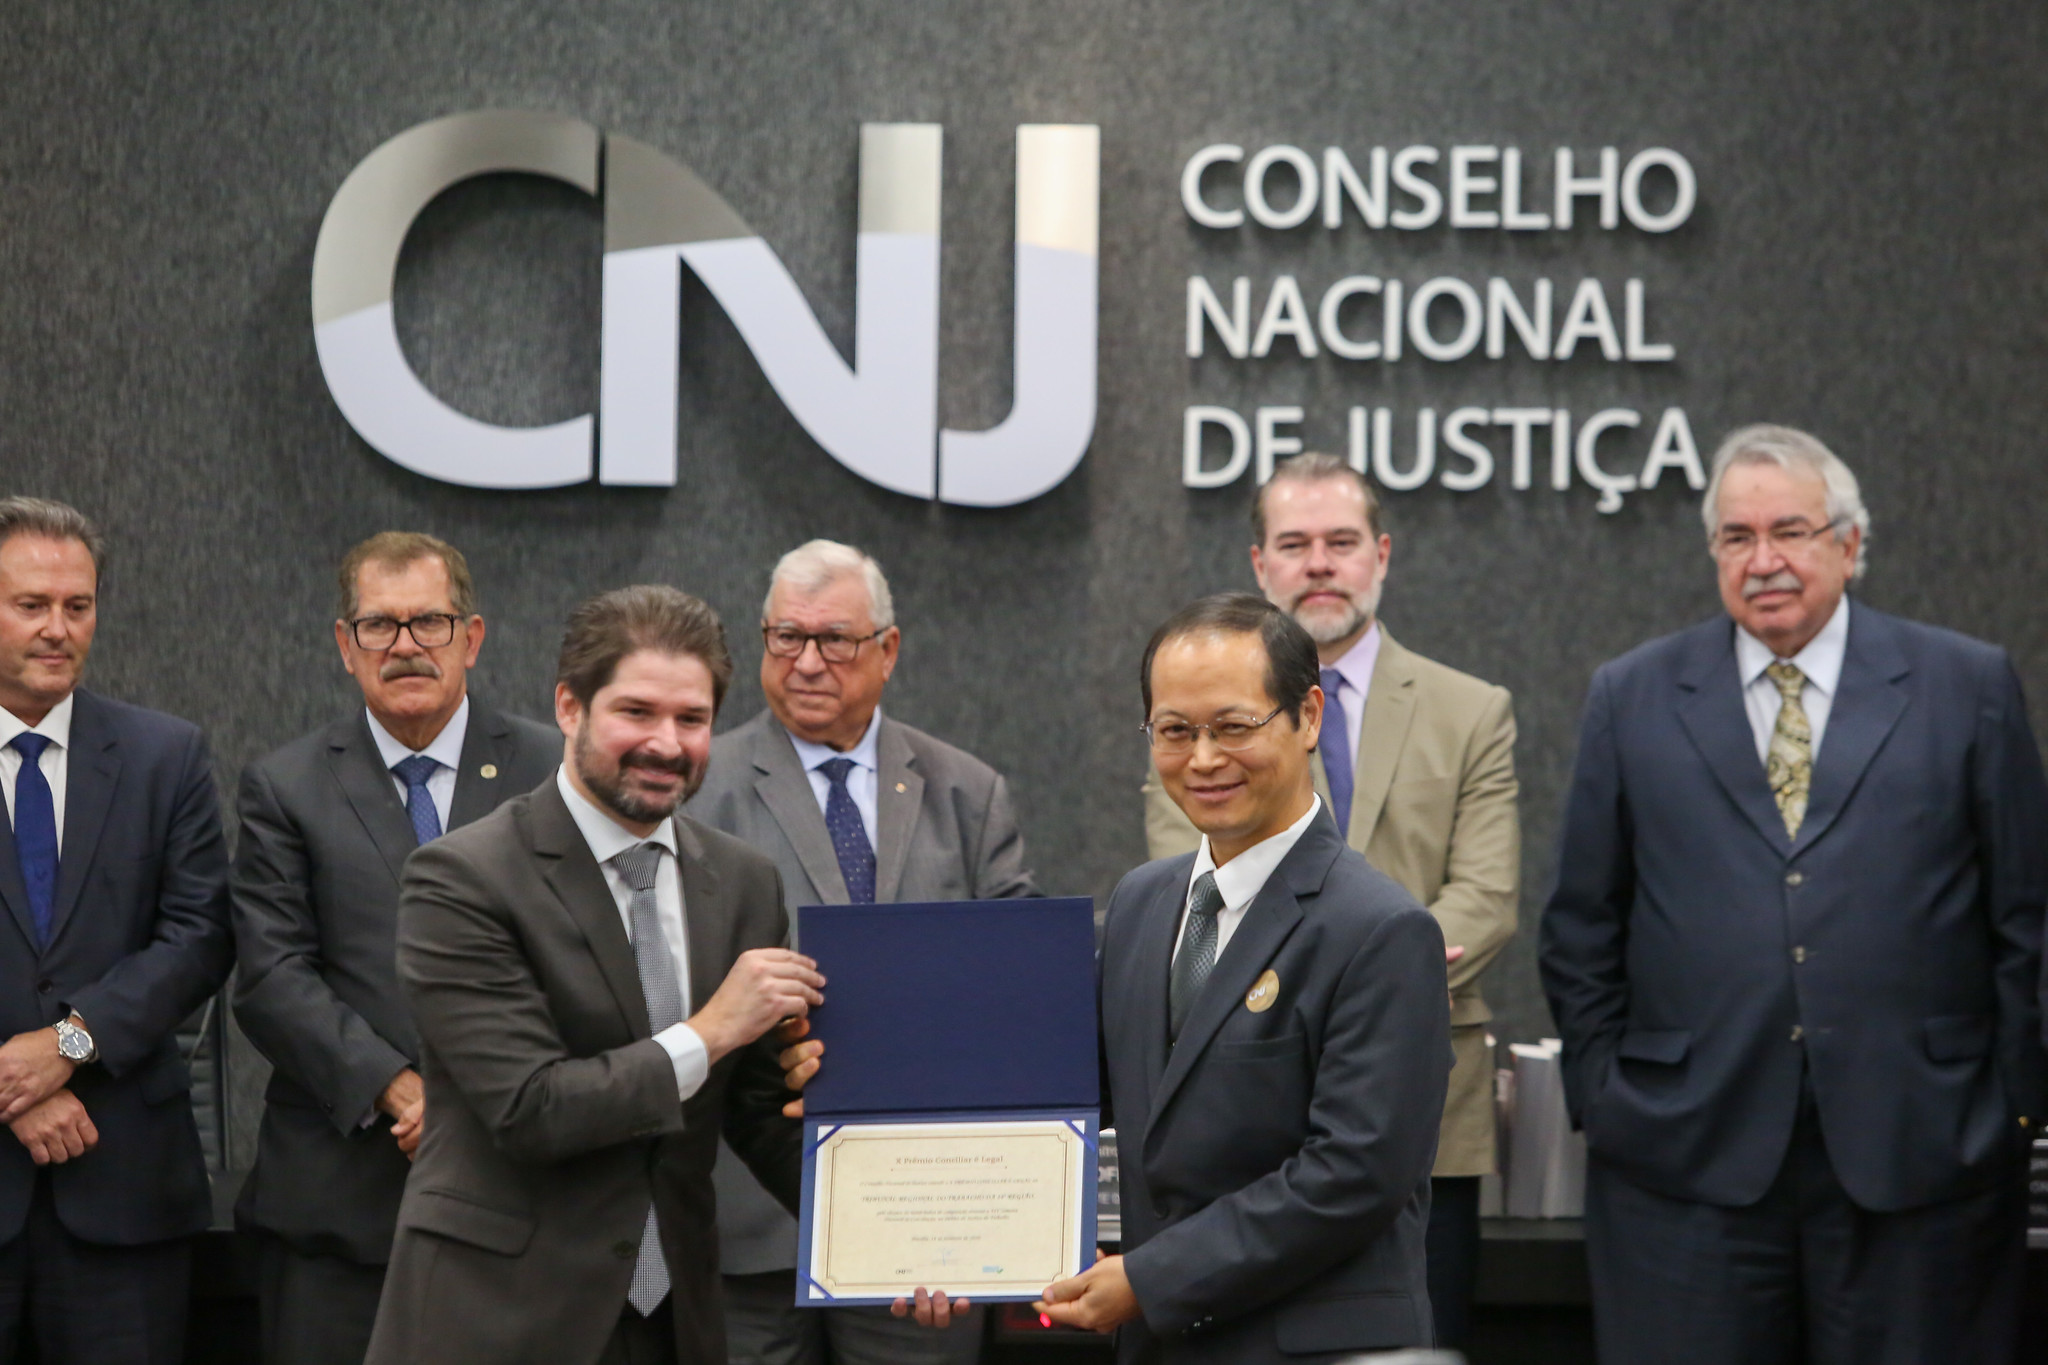 Ao todo 22 práticas que ajudaram a fortalecer a política de resolução de conflitos por meio da conciliação e mediação foram reconhecidos pelo CNJ